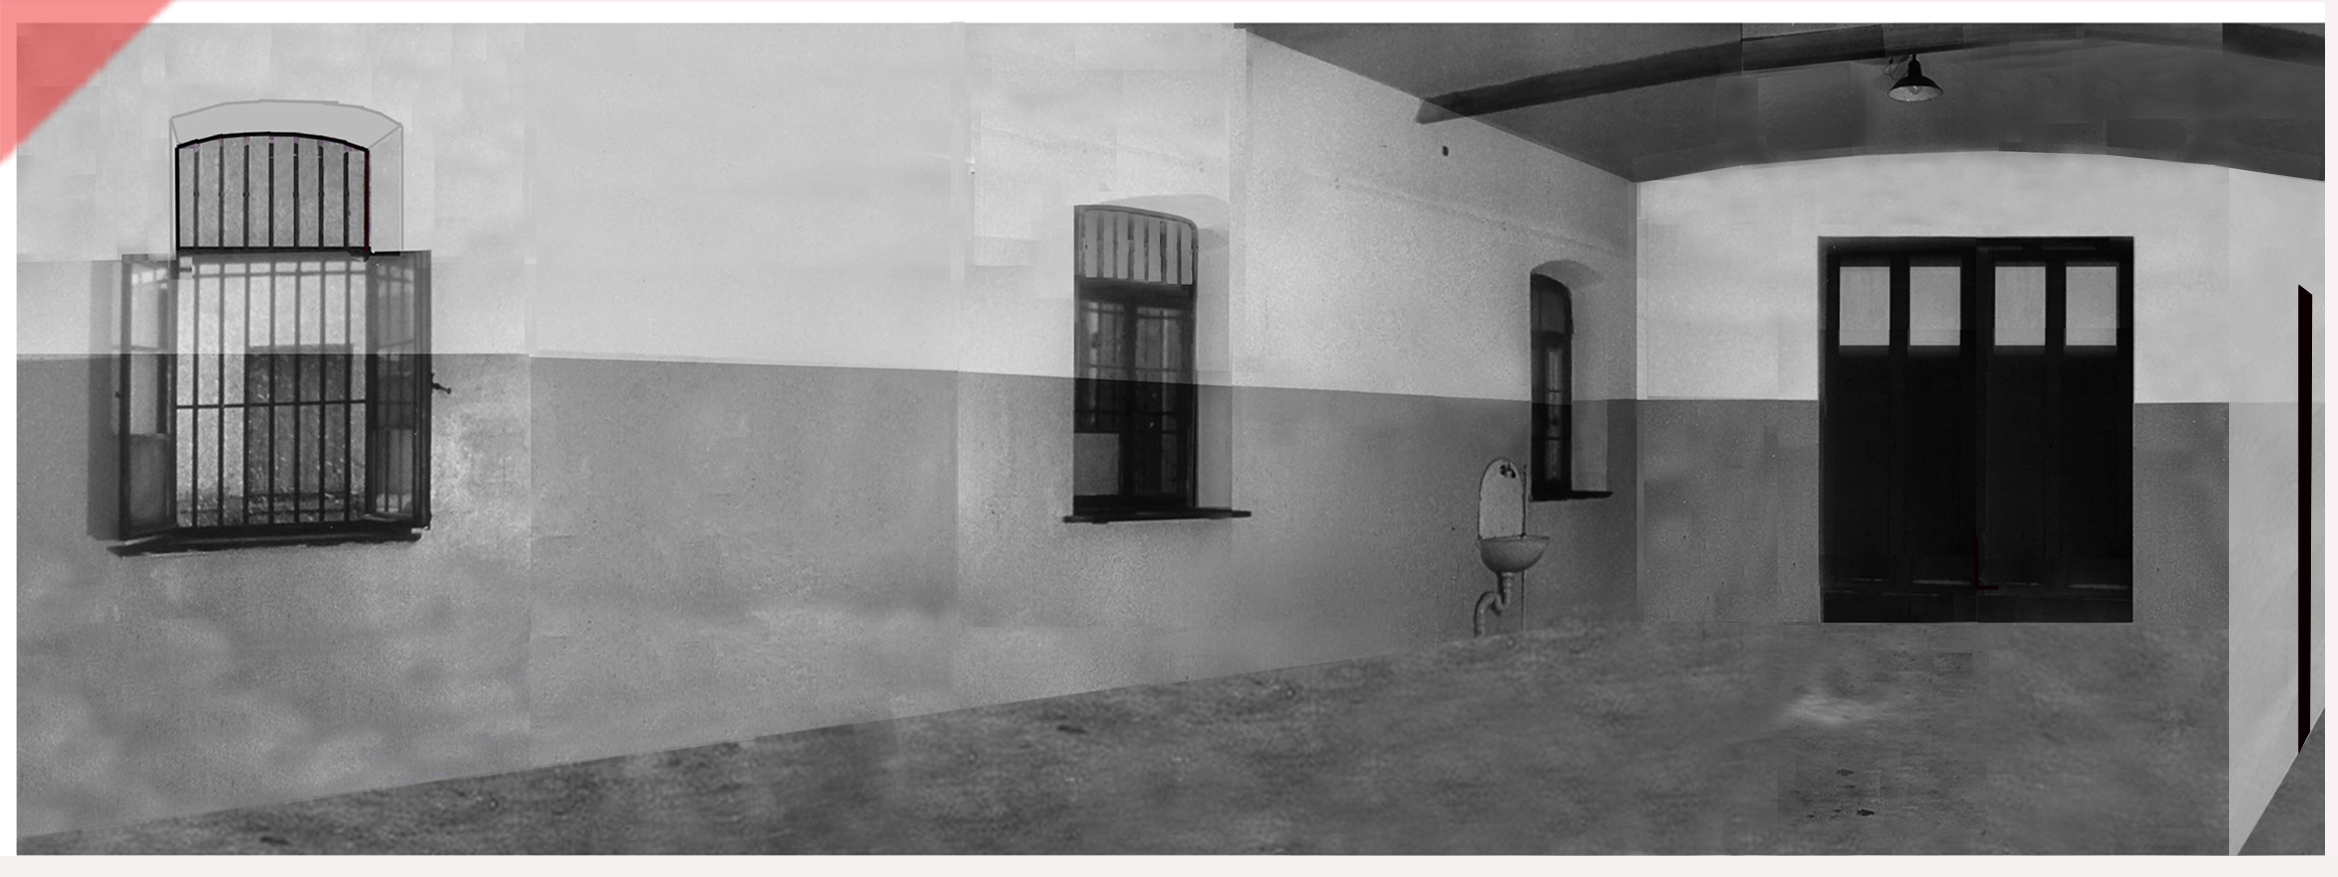 Weiße-Weisse-Rose-Hinrichtungsraum-Hinrichtungsstätte-1943-1958-Fallbeil-Enthauptung-Panorama-Blick-schwarzer-Vorhang-Garage-Weisse-Rose-Probst-Huber-Schmorell-Graf-Stadelheim-München-Muenchen-White-Rose-execution-room-chamber-1943-1958-site-fallbeil-beheadings-room-panoramic-black-curtain-garage-prison-stadelheim-munich